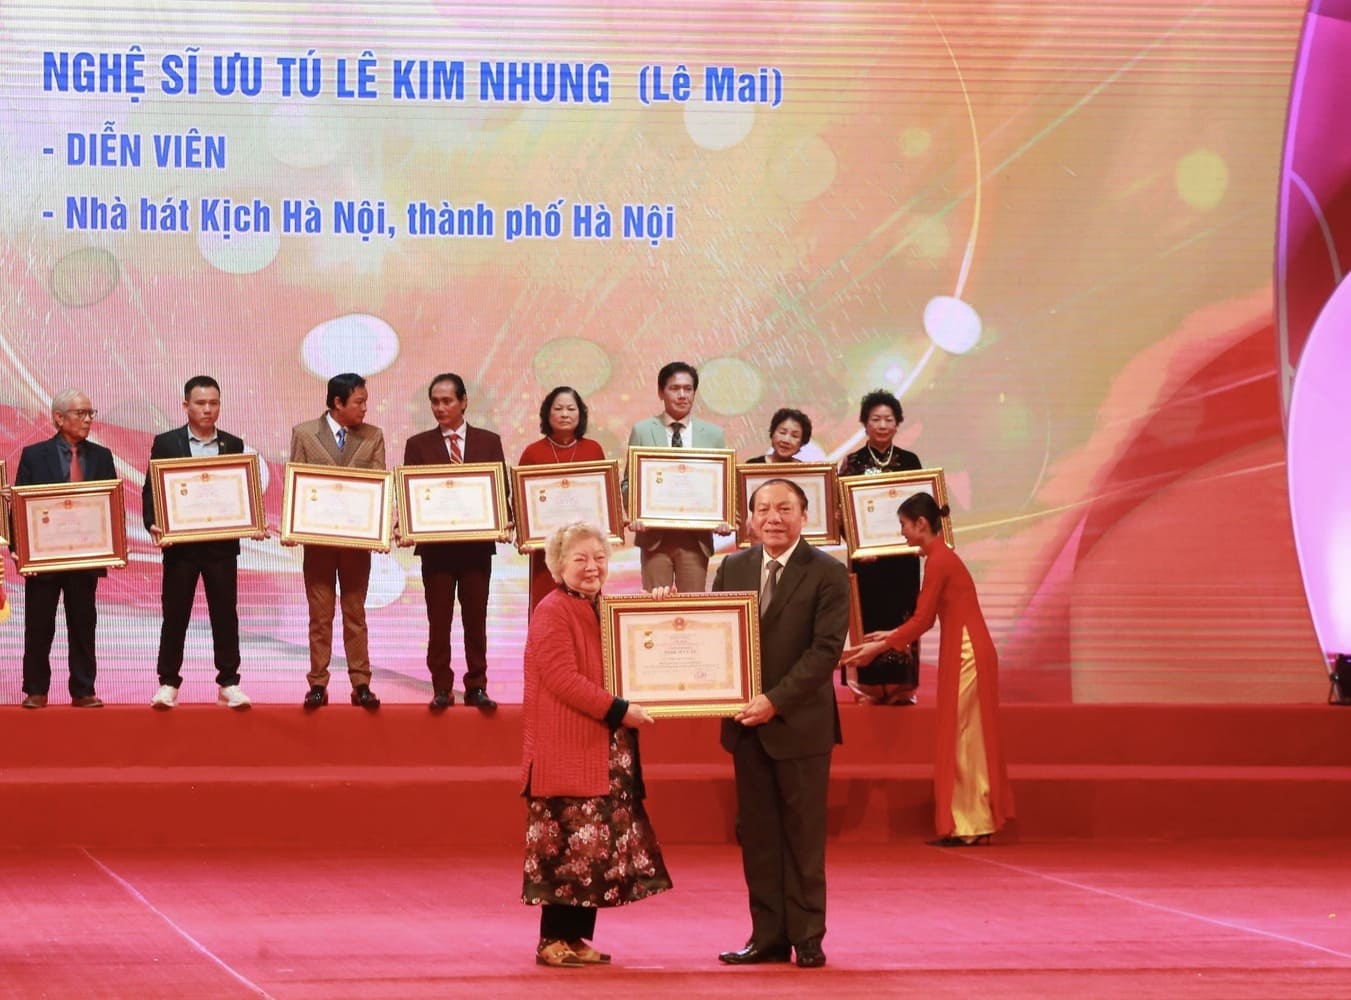 Nghệ sĩ Lê Mai nhận danh hiệu Nghệ sĩ Ưu tú. Ảnh: Thùy Trang